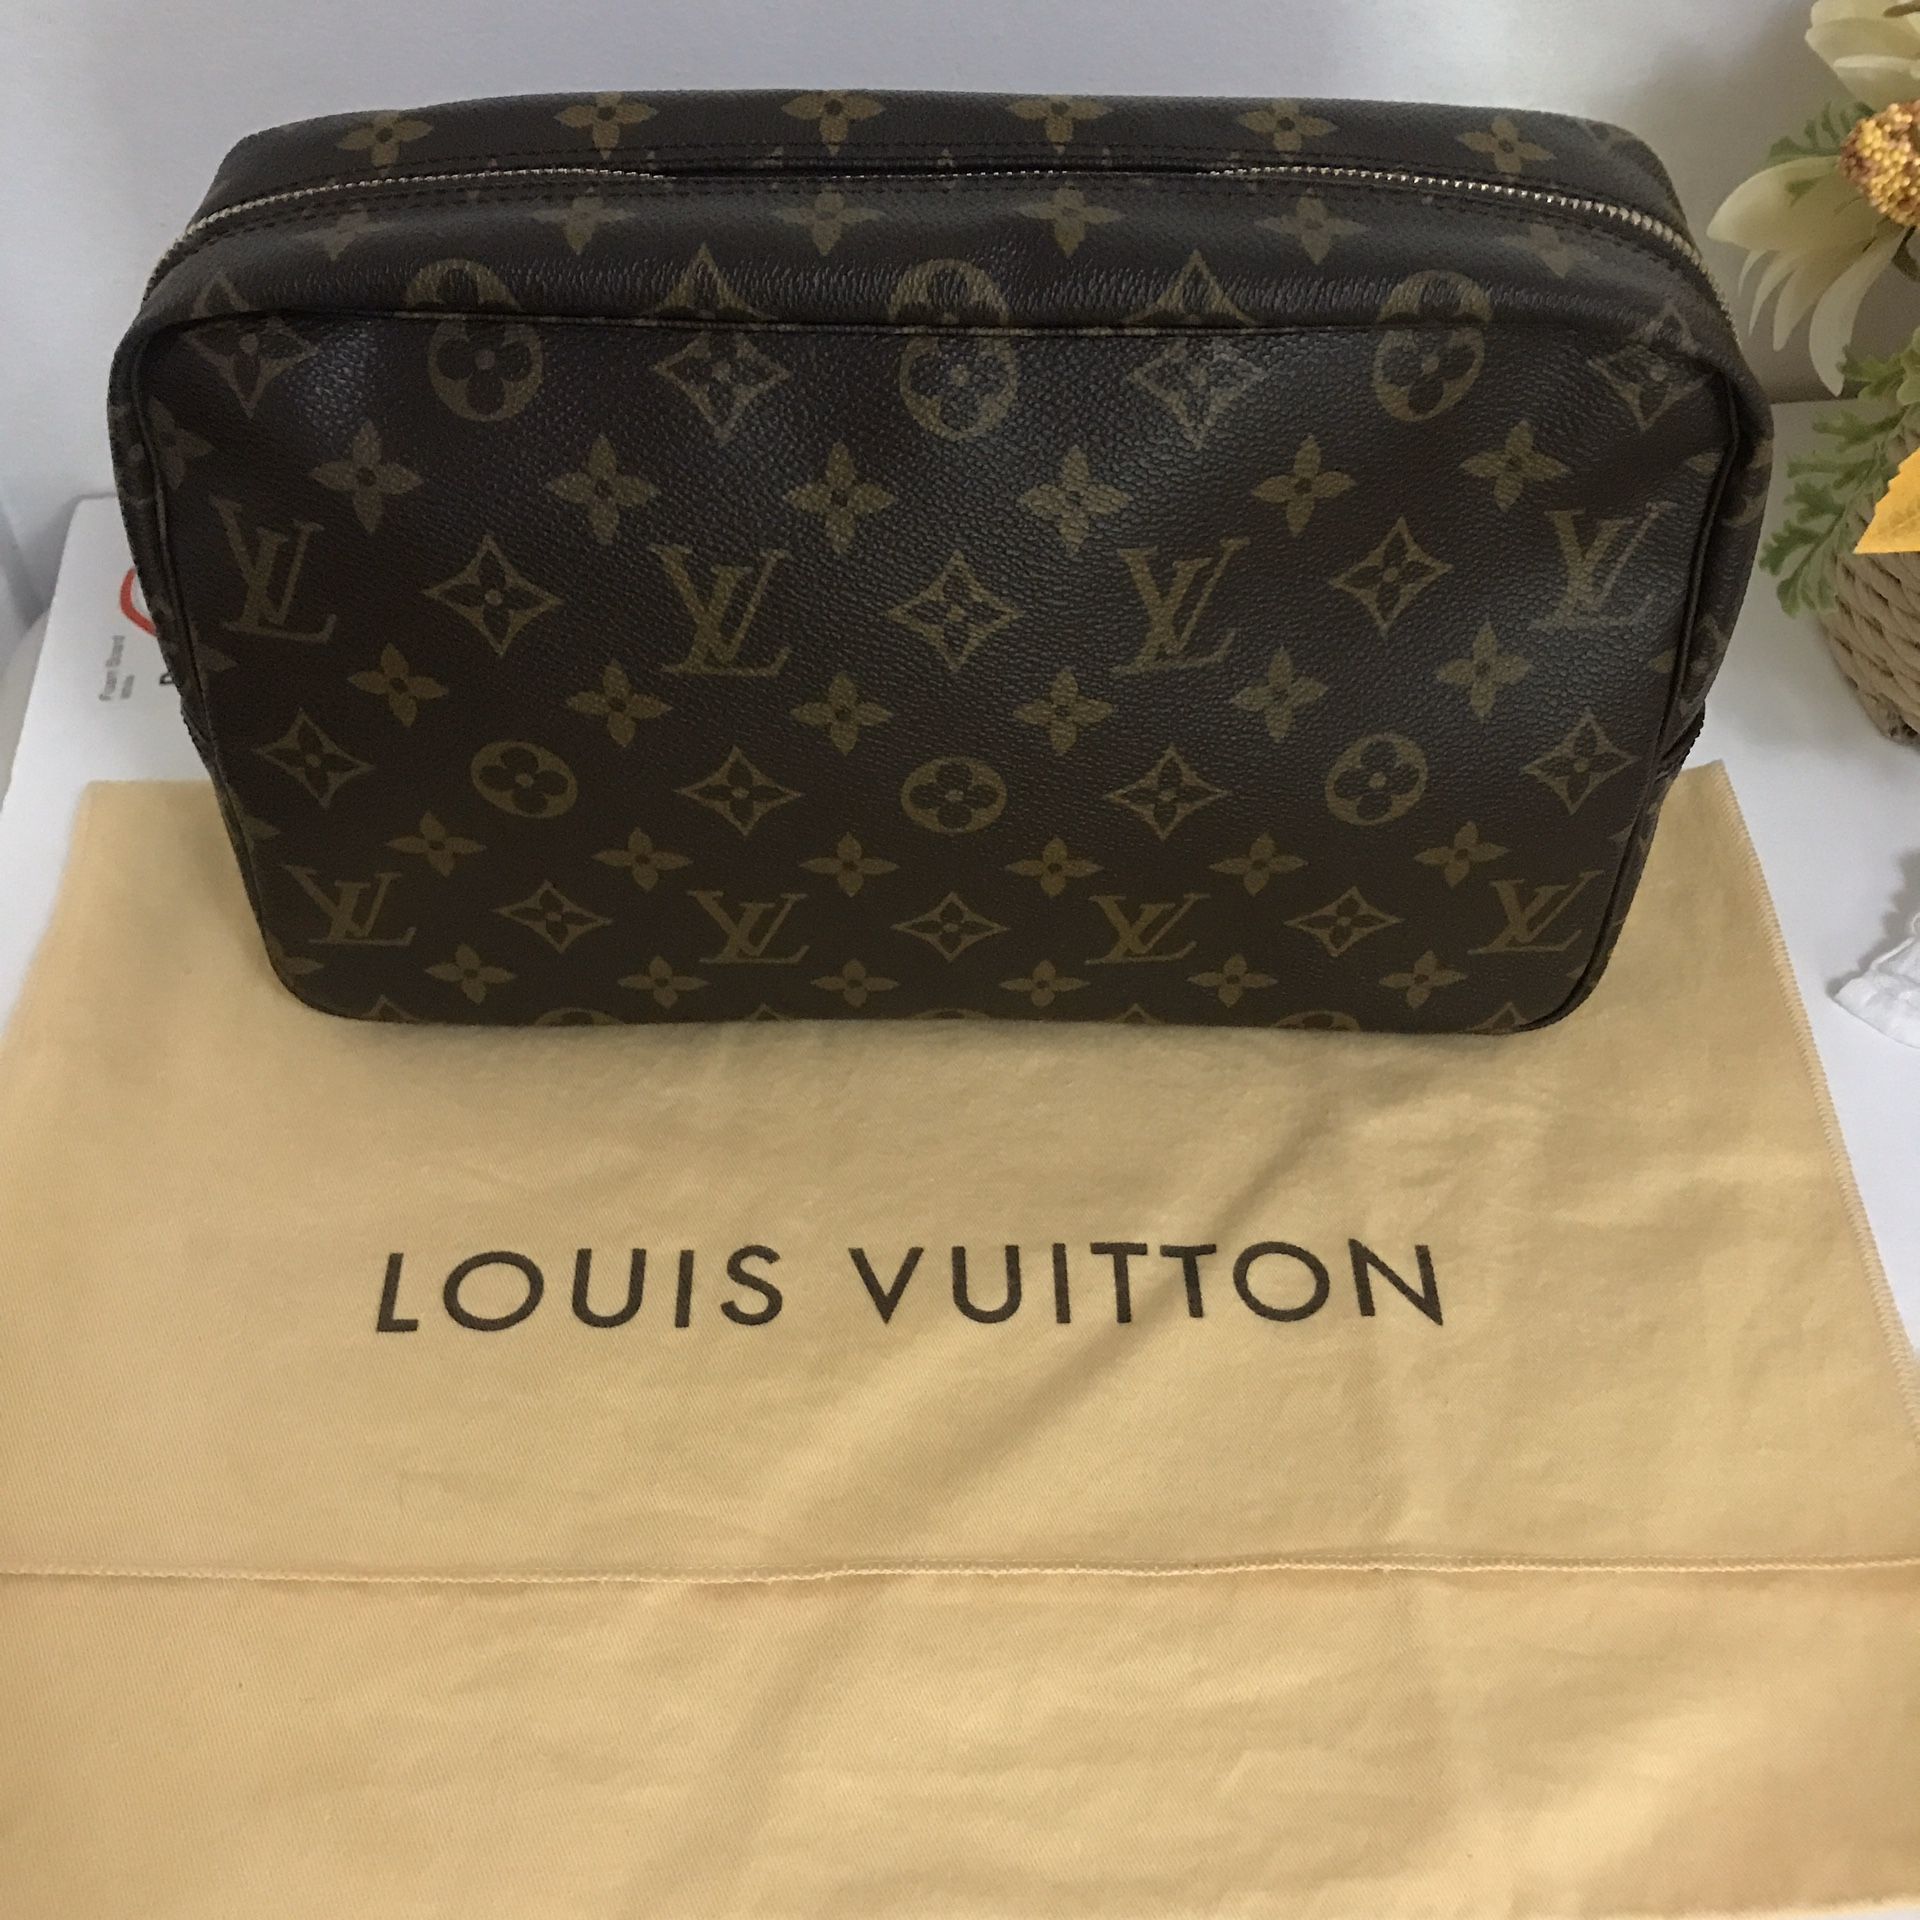 Louis Vuitton trousse 28